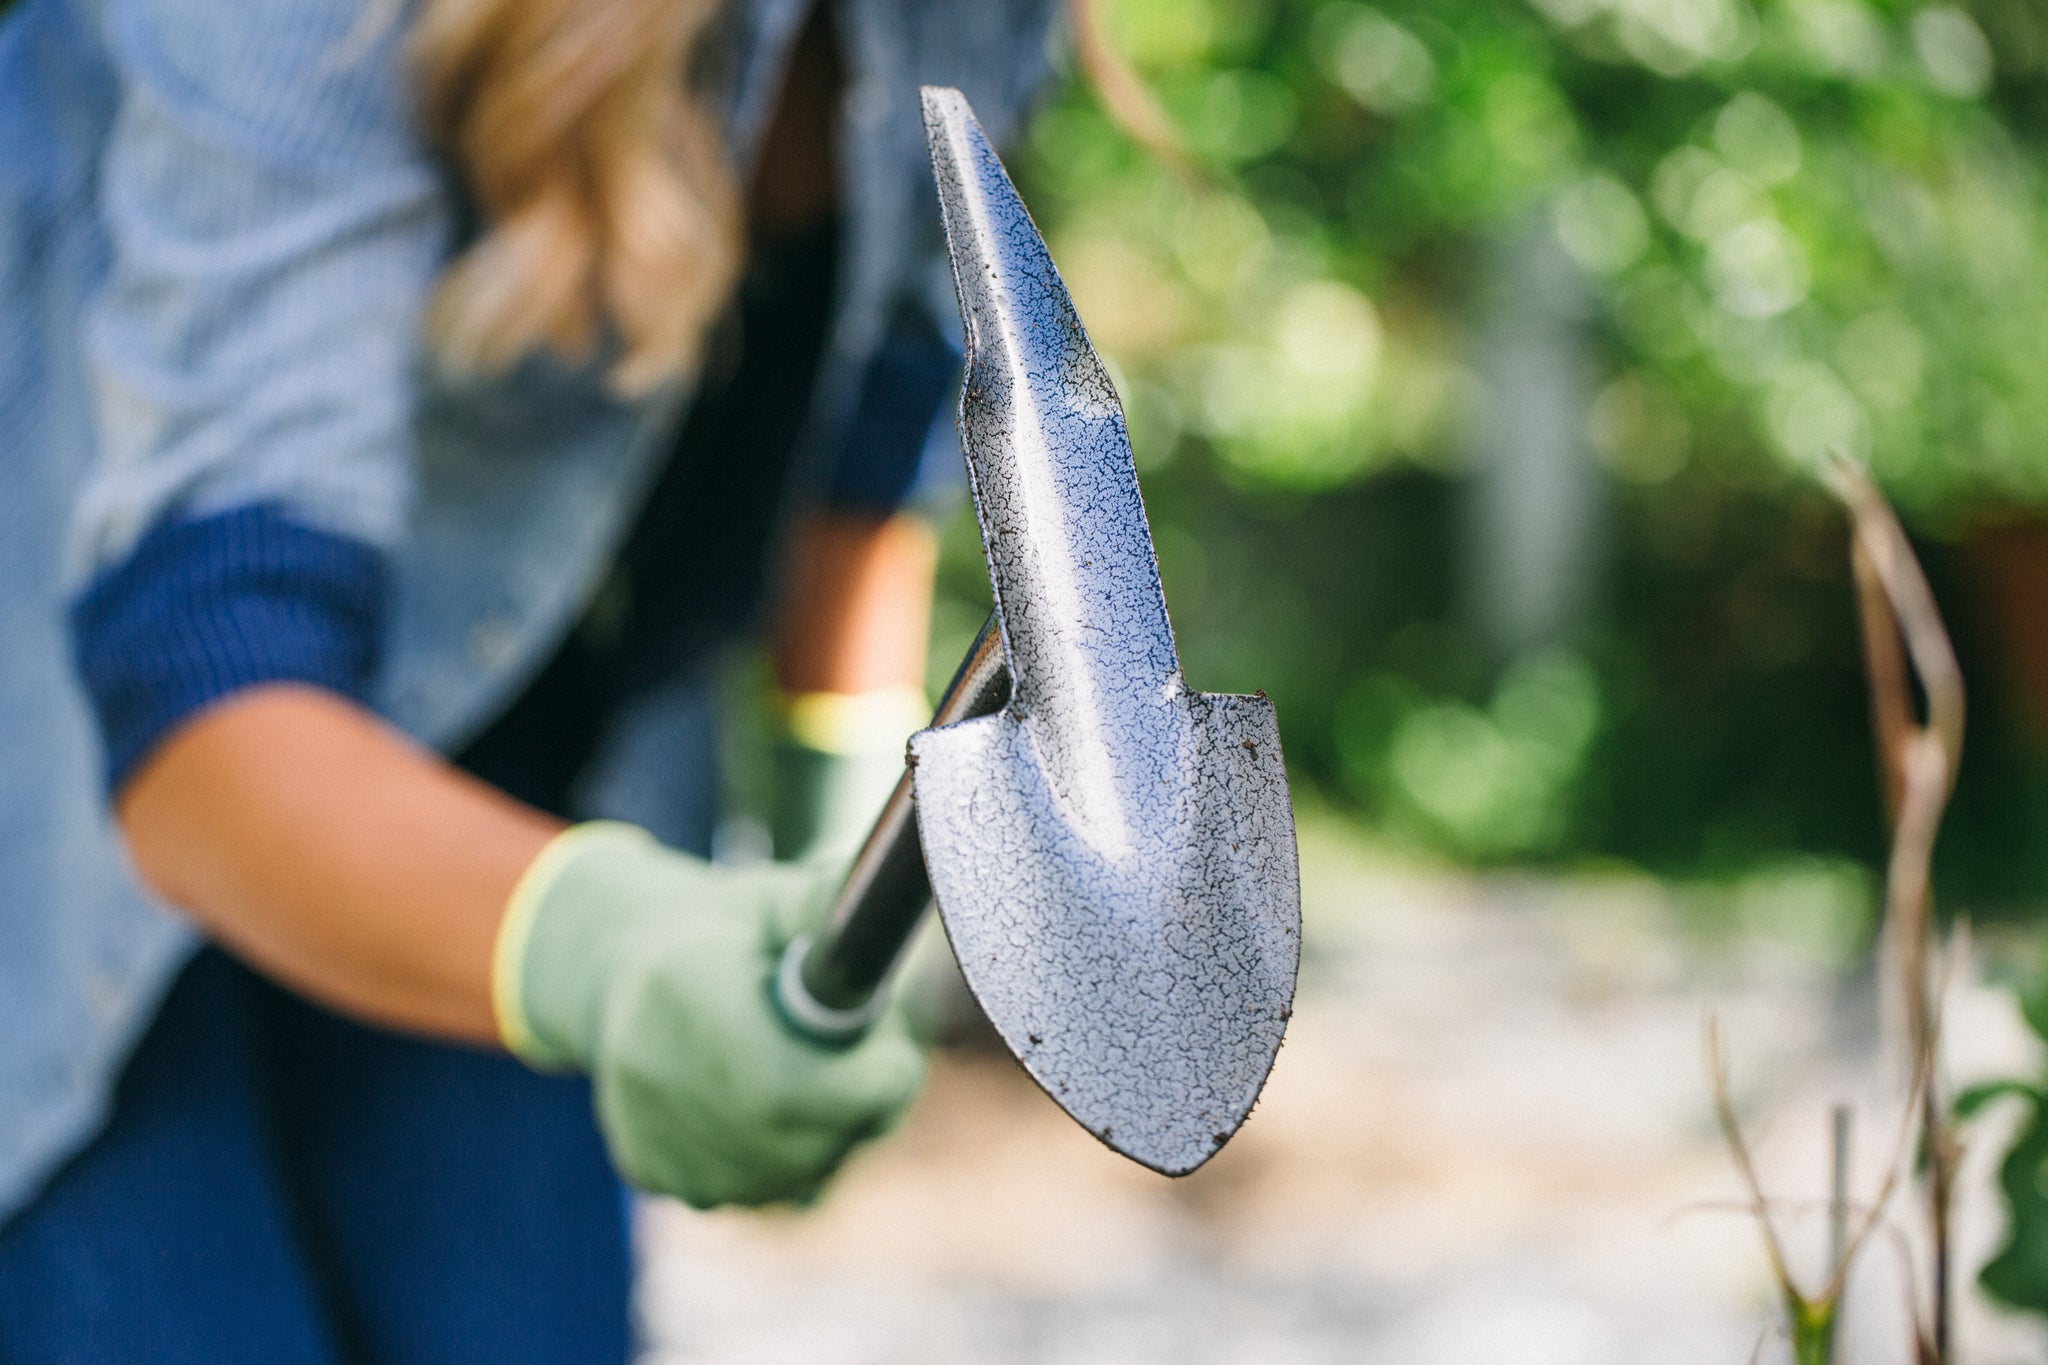 Terra Planter: All Purpose Garden Hand Shovel